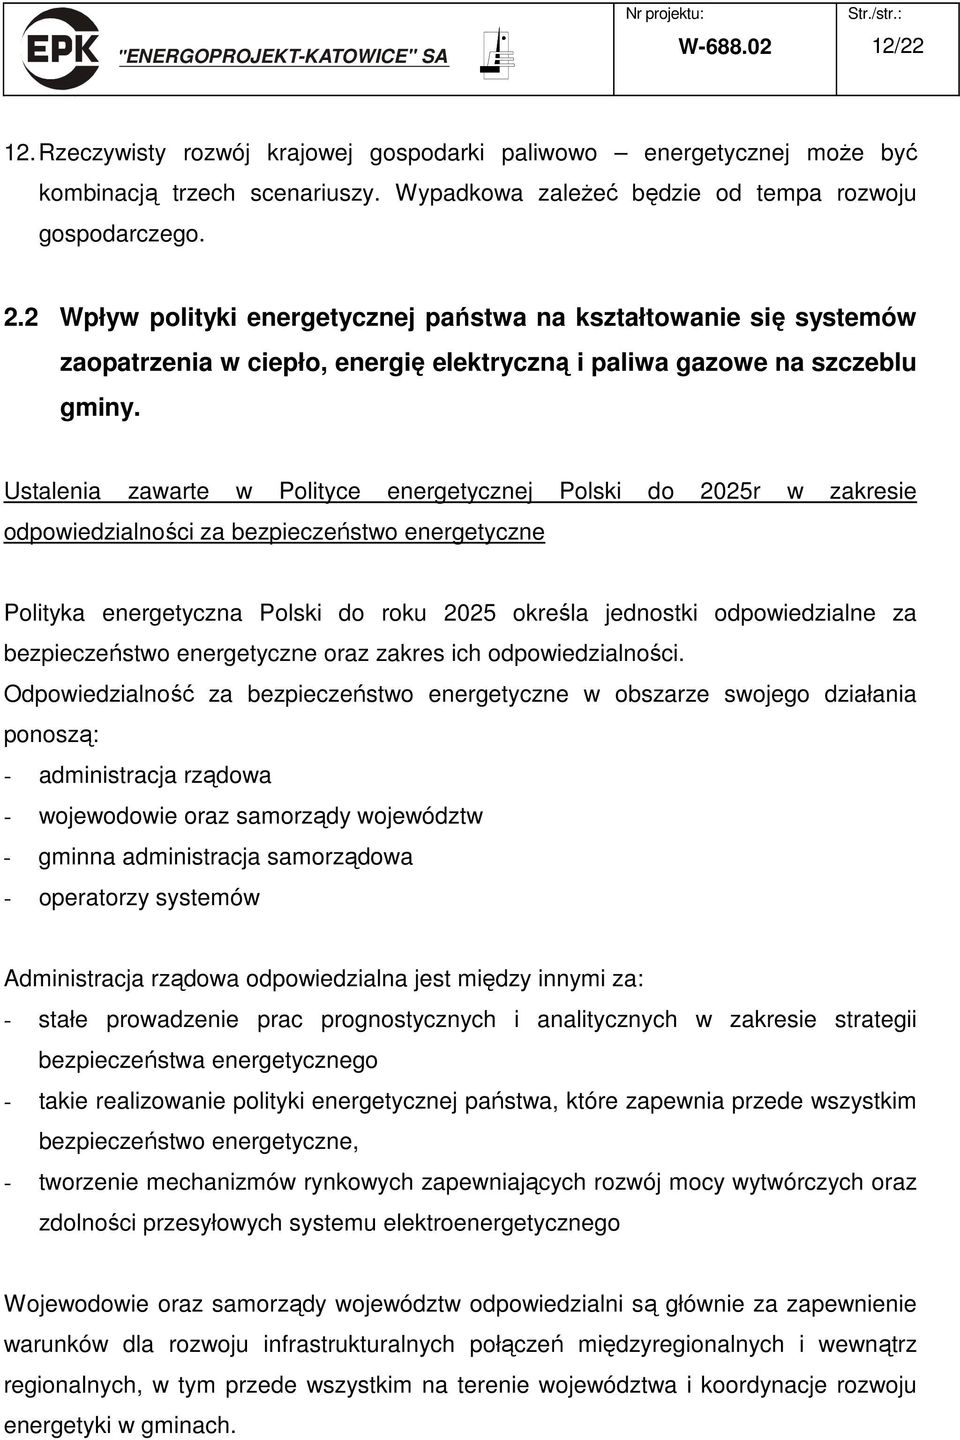 Ustalenia zawarte w Polityce energetycznej Polski do 2025r w zakresie odpowiedzialności za bezpieczeństwo energetyczne Polityka energetyczna Polski do roku 2025 określa jednostki odpowiedzialne za